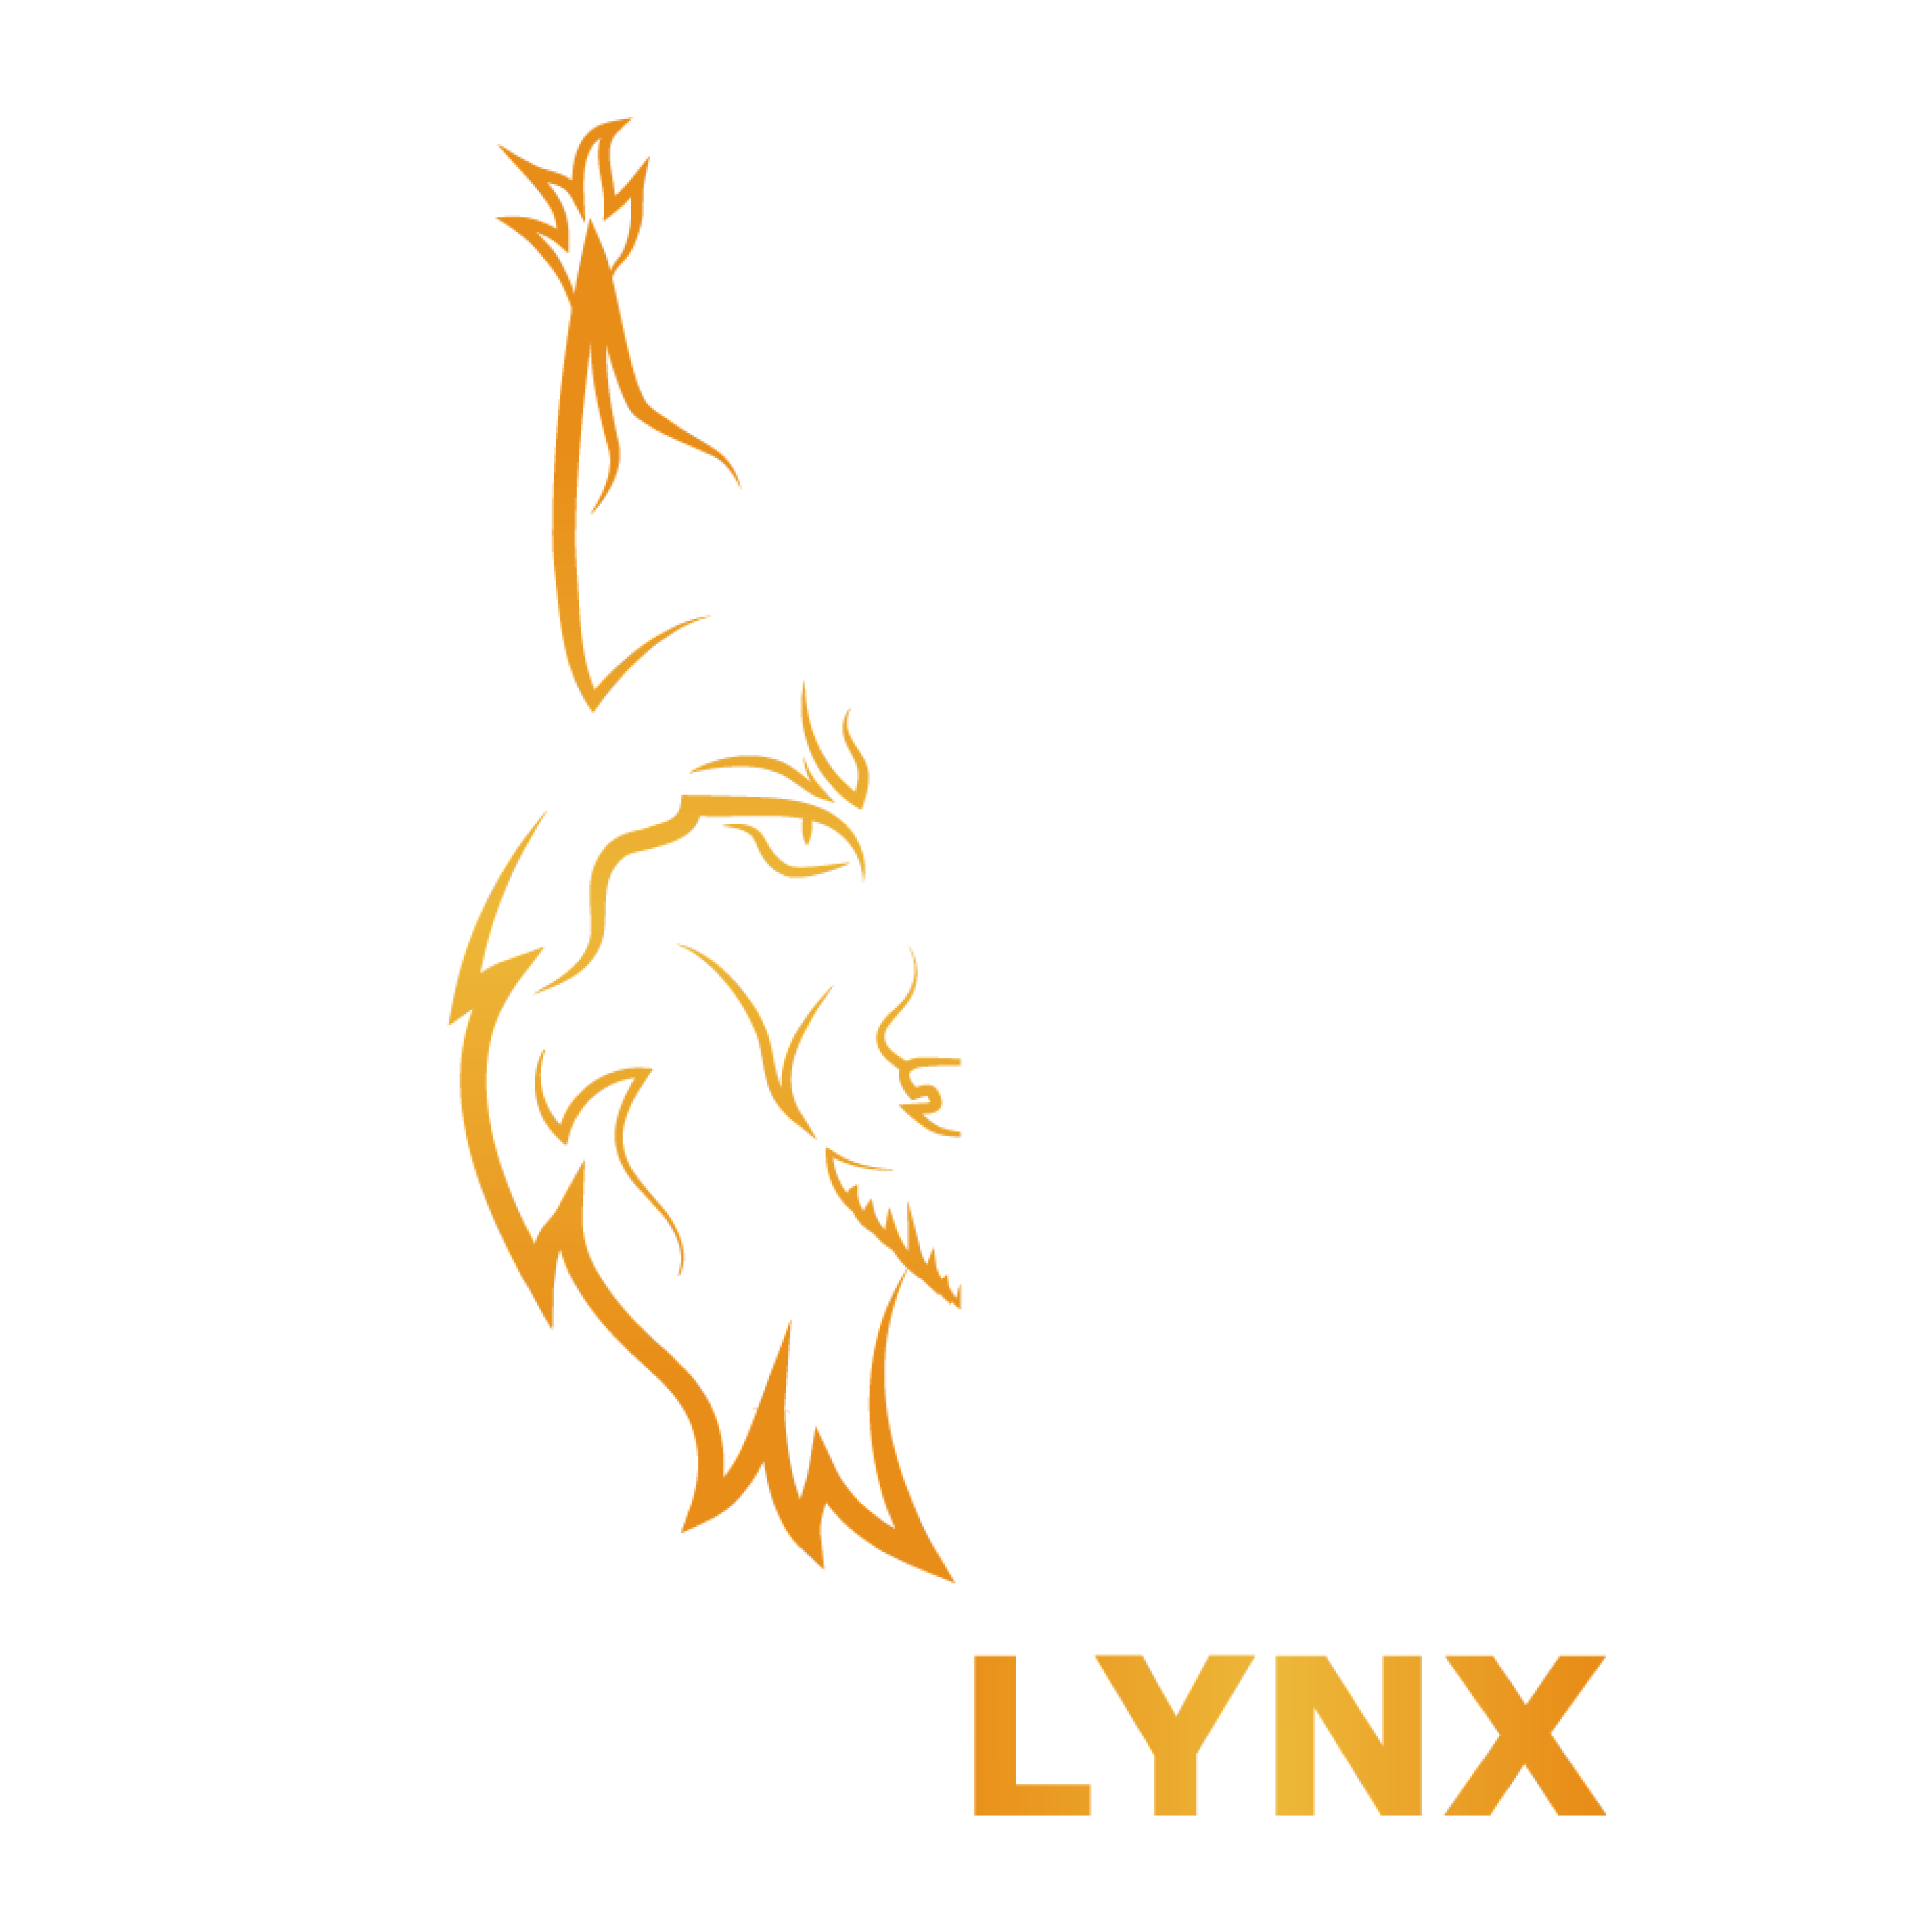 HypeLynx